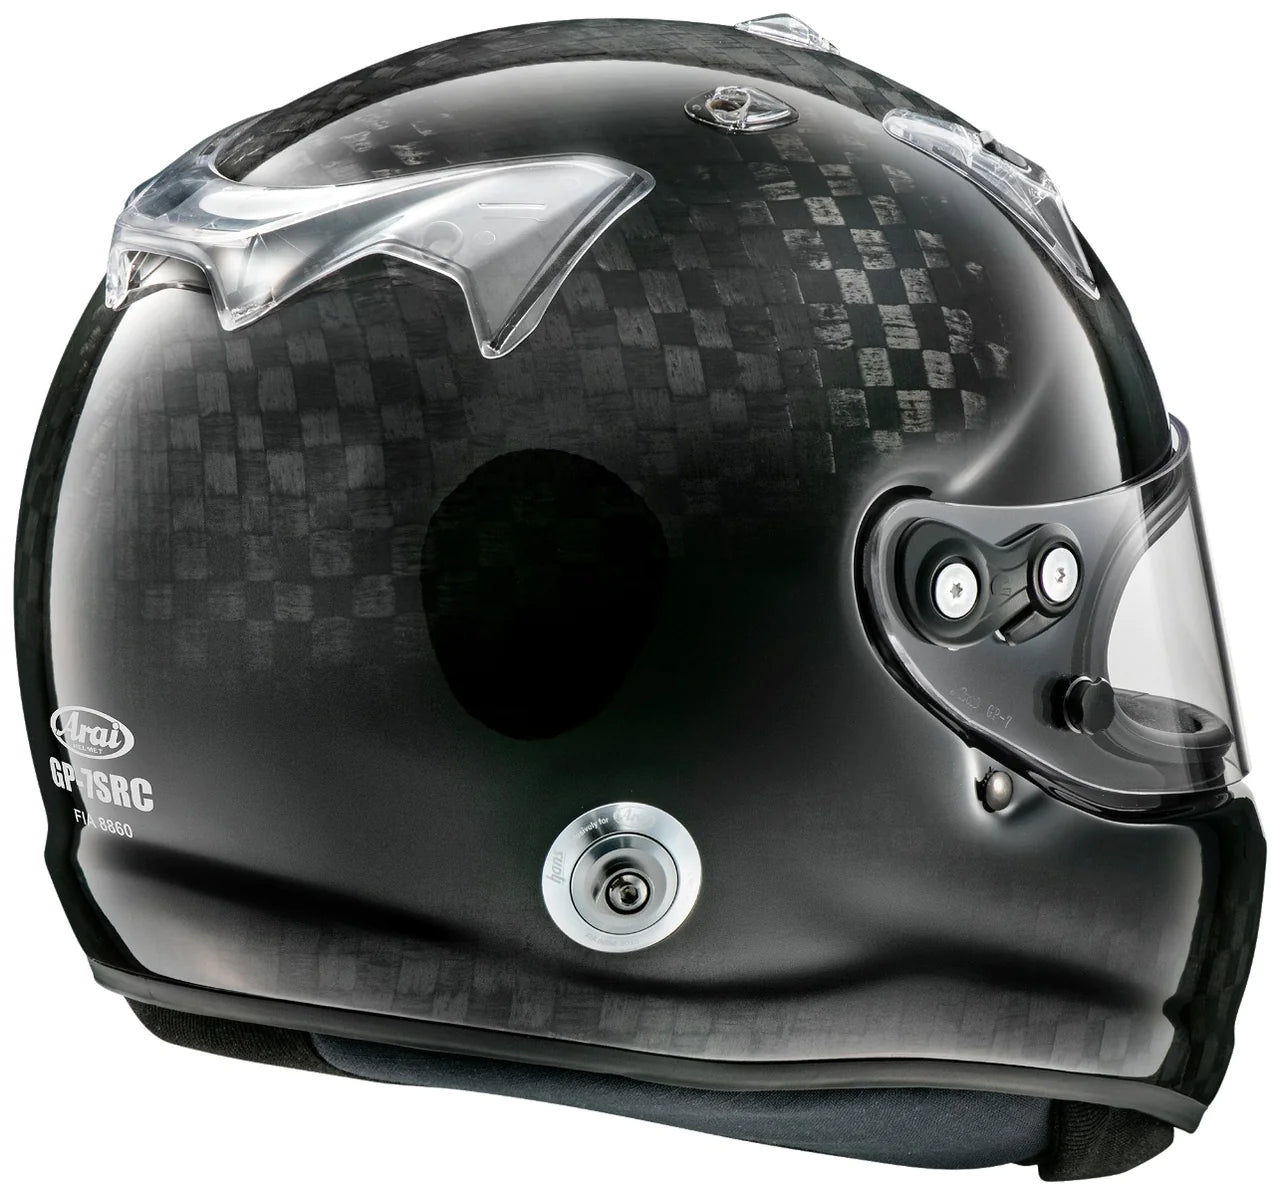 Arai GP-7SRC 8860-2018 Carbon Fiber Helmet